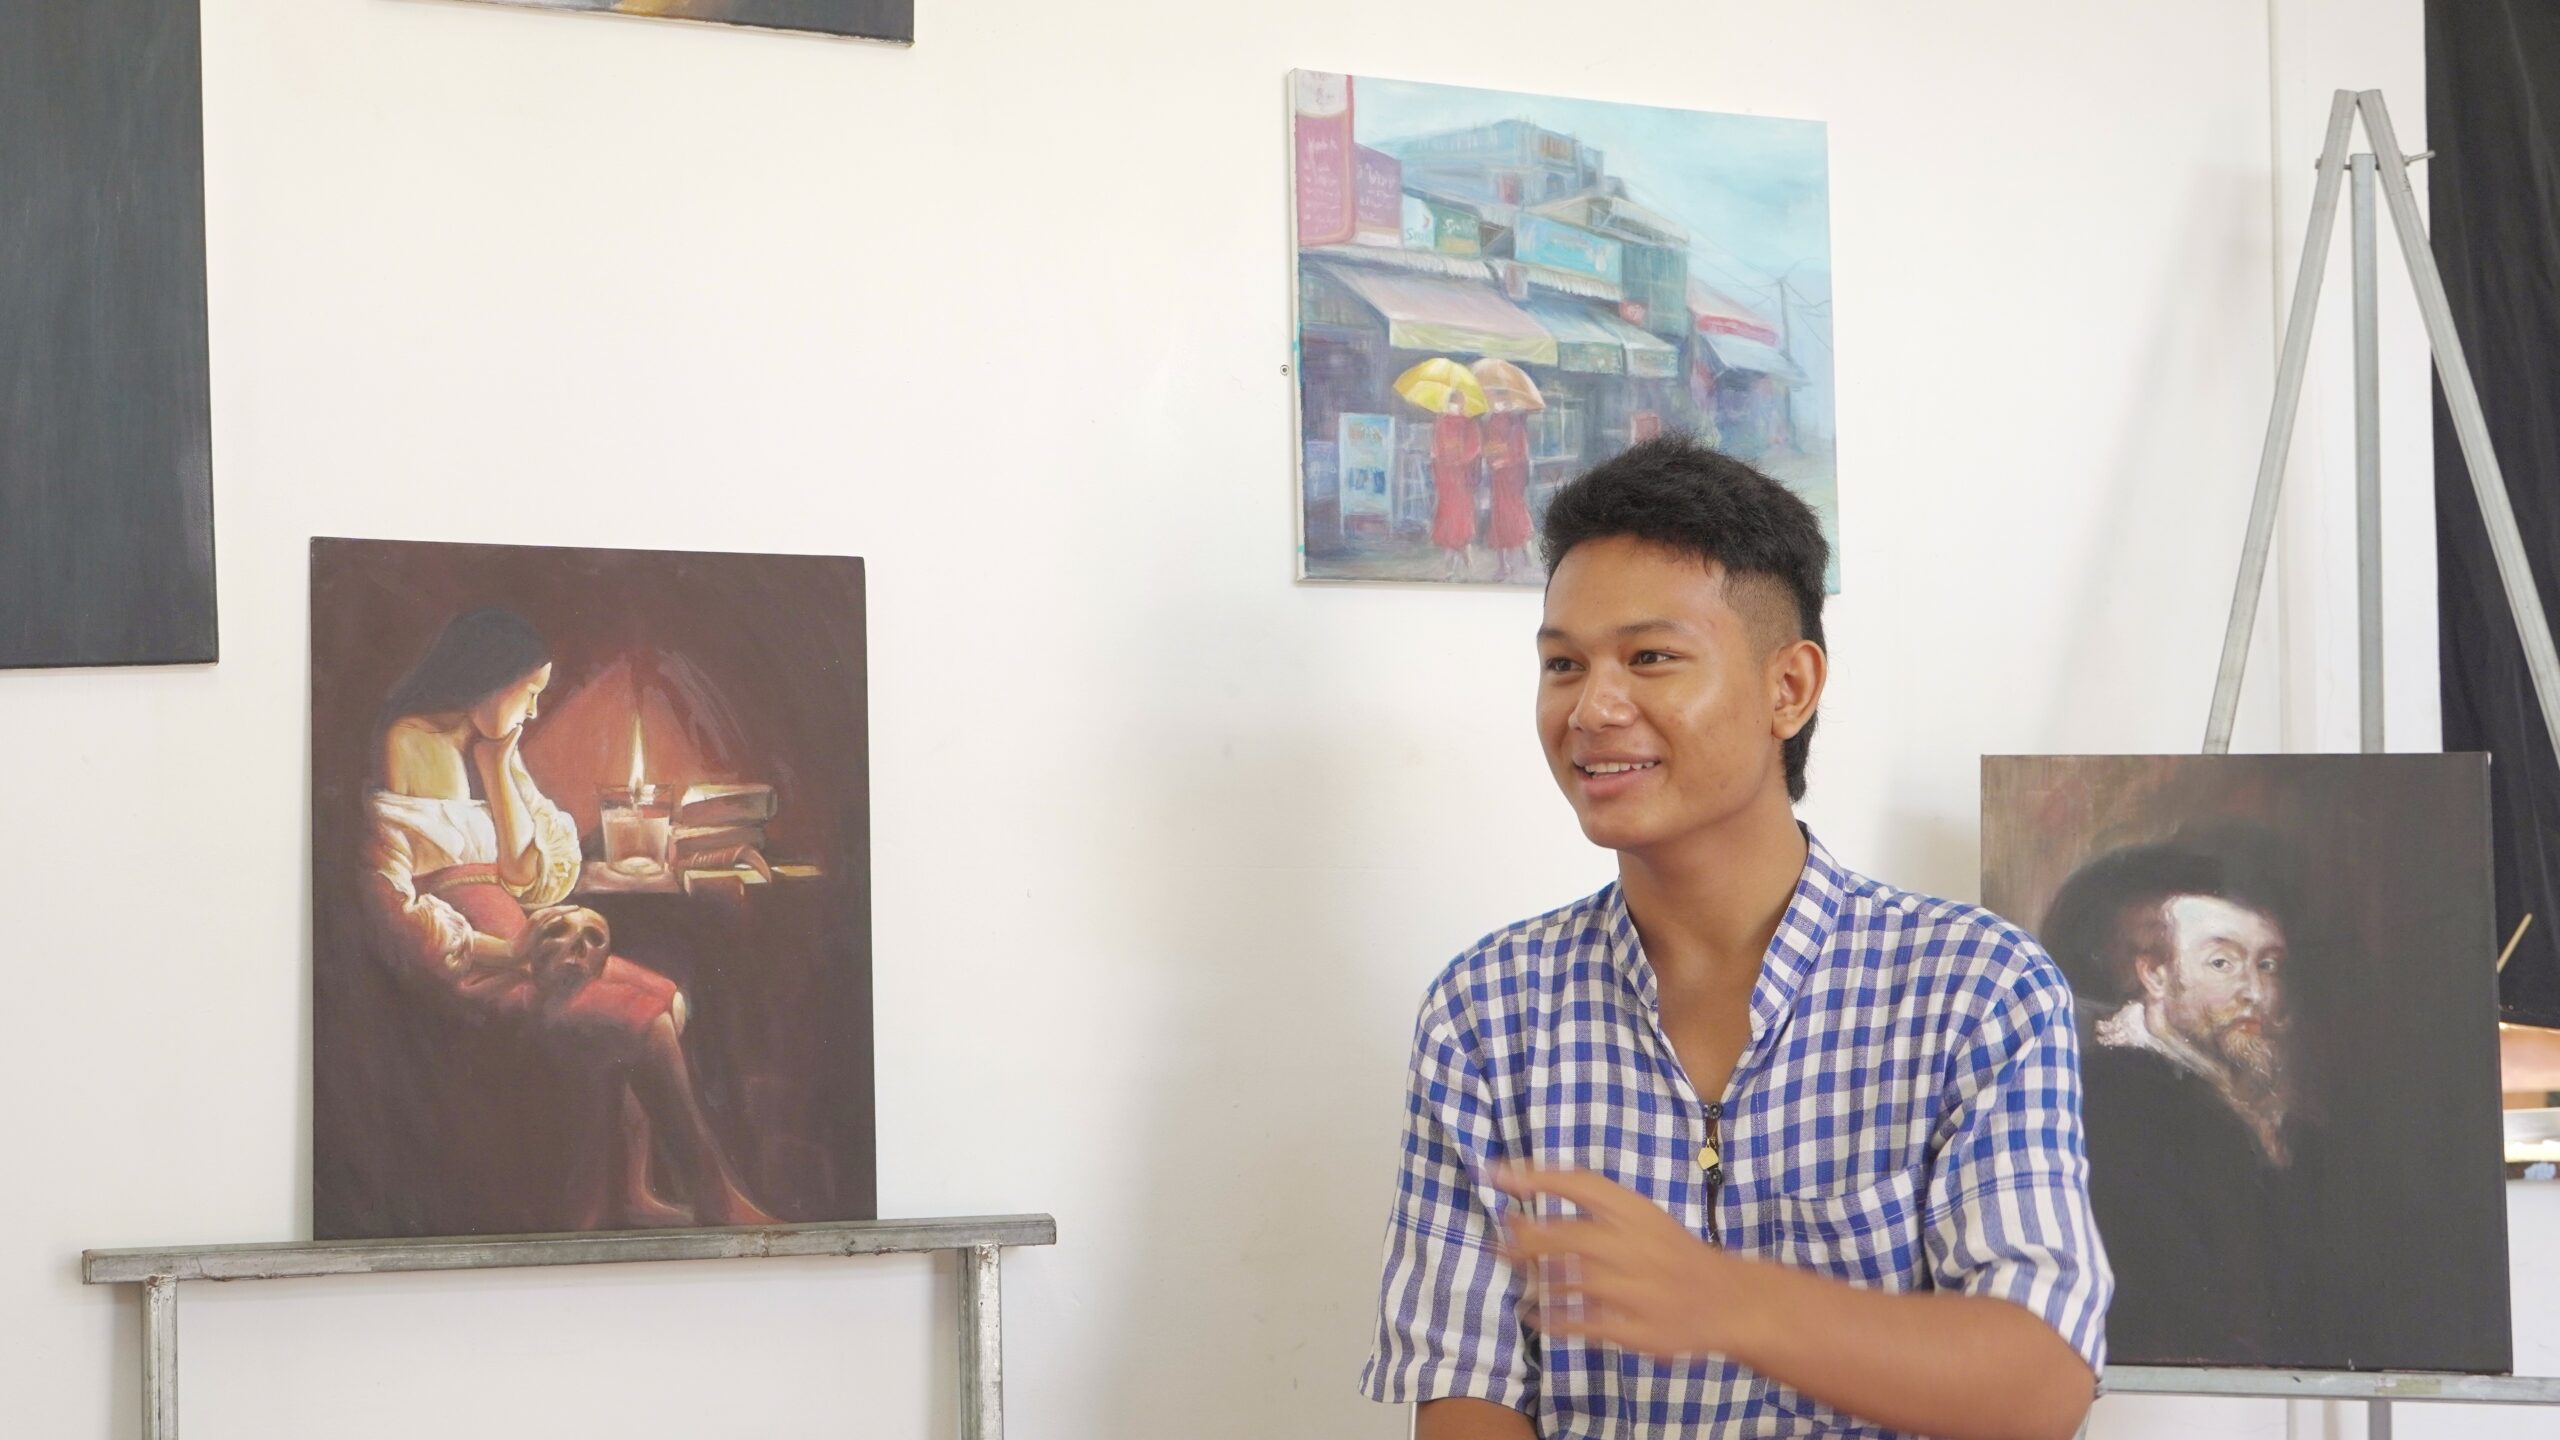 Meet Karona, the First Recipient of the Srey Bandaul Art Development Fund